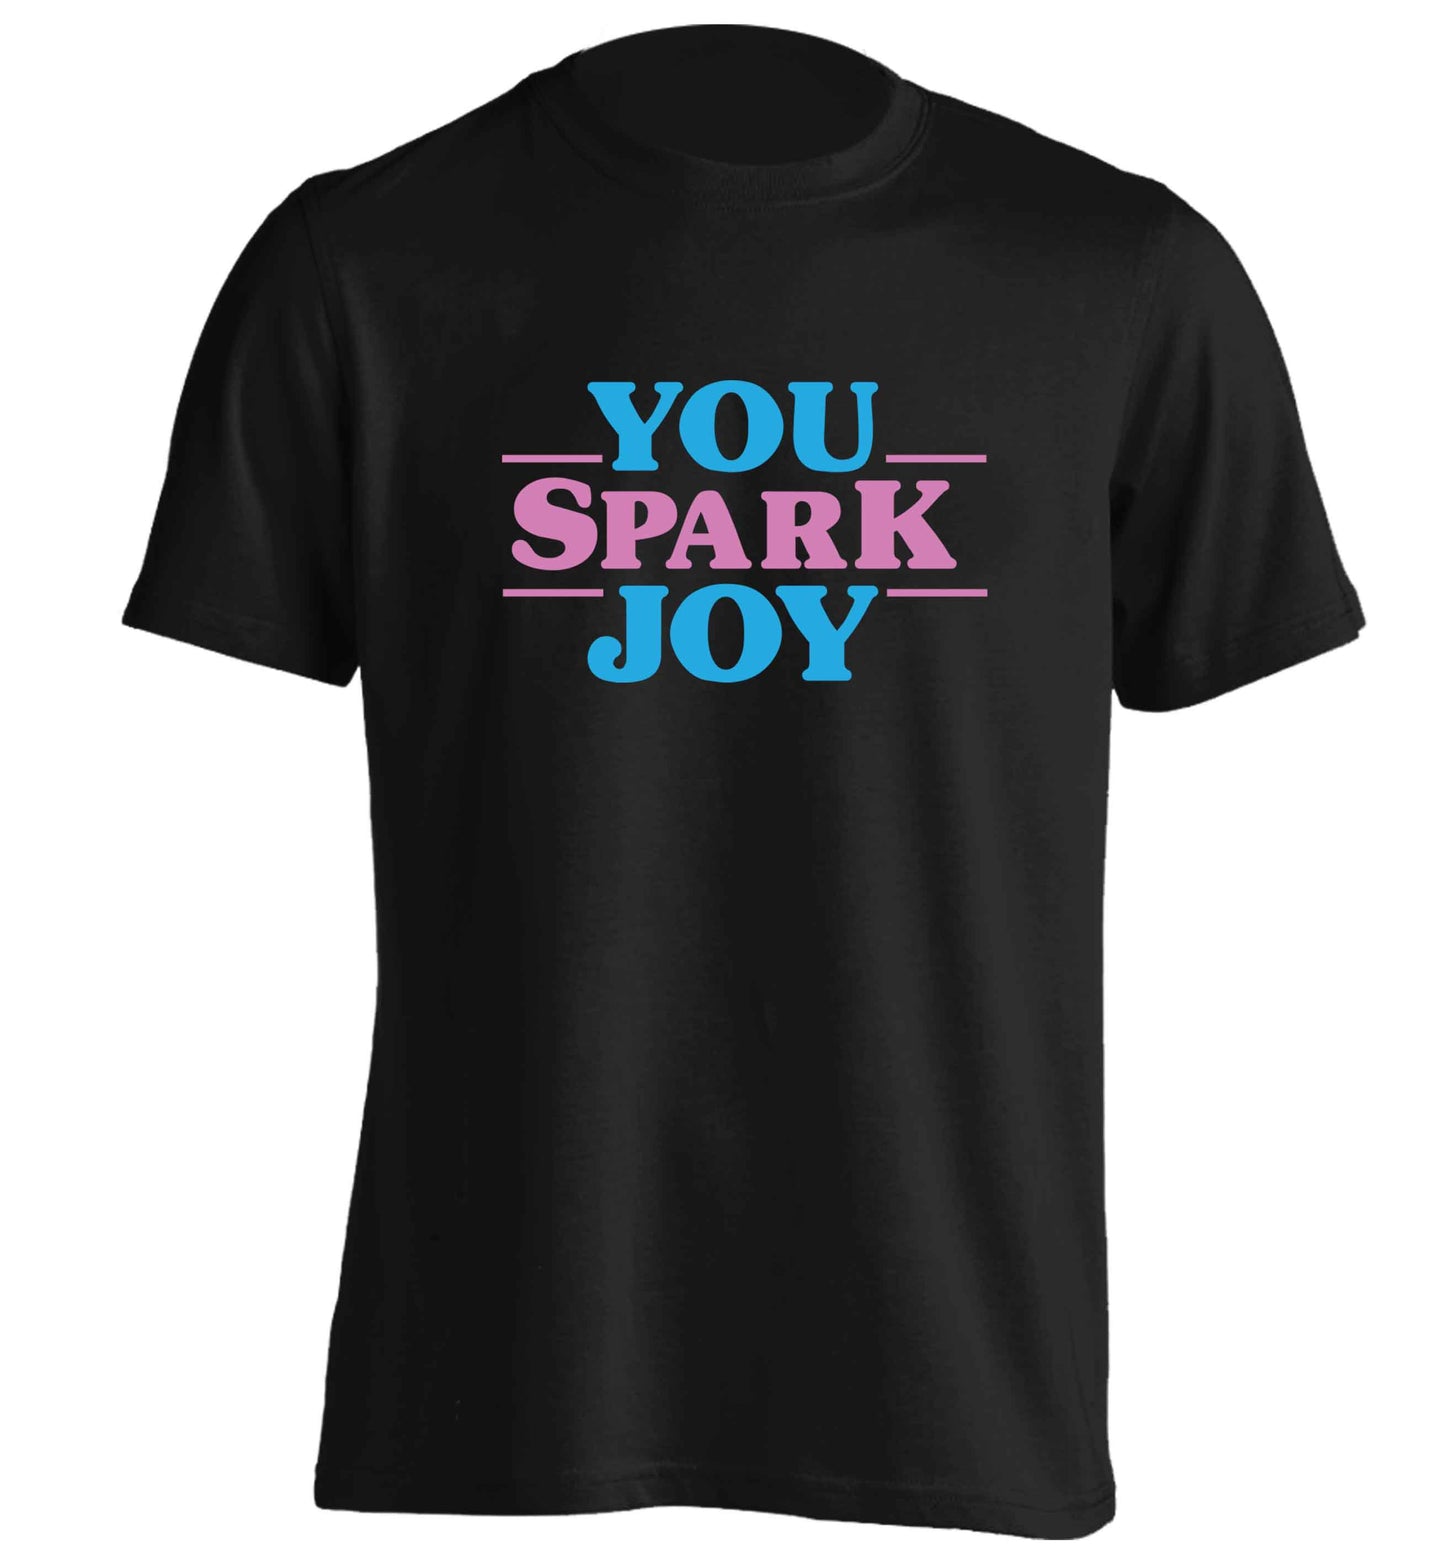 You spark joy adults unisex black Tshirt 2XL